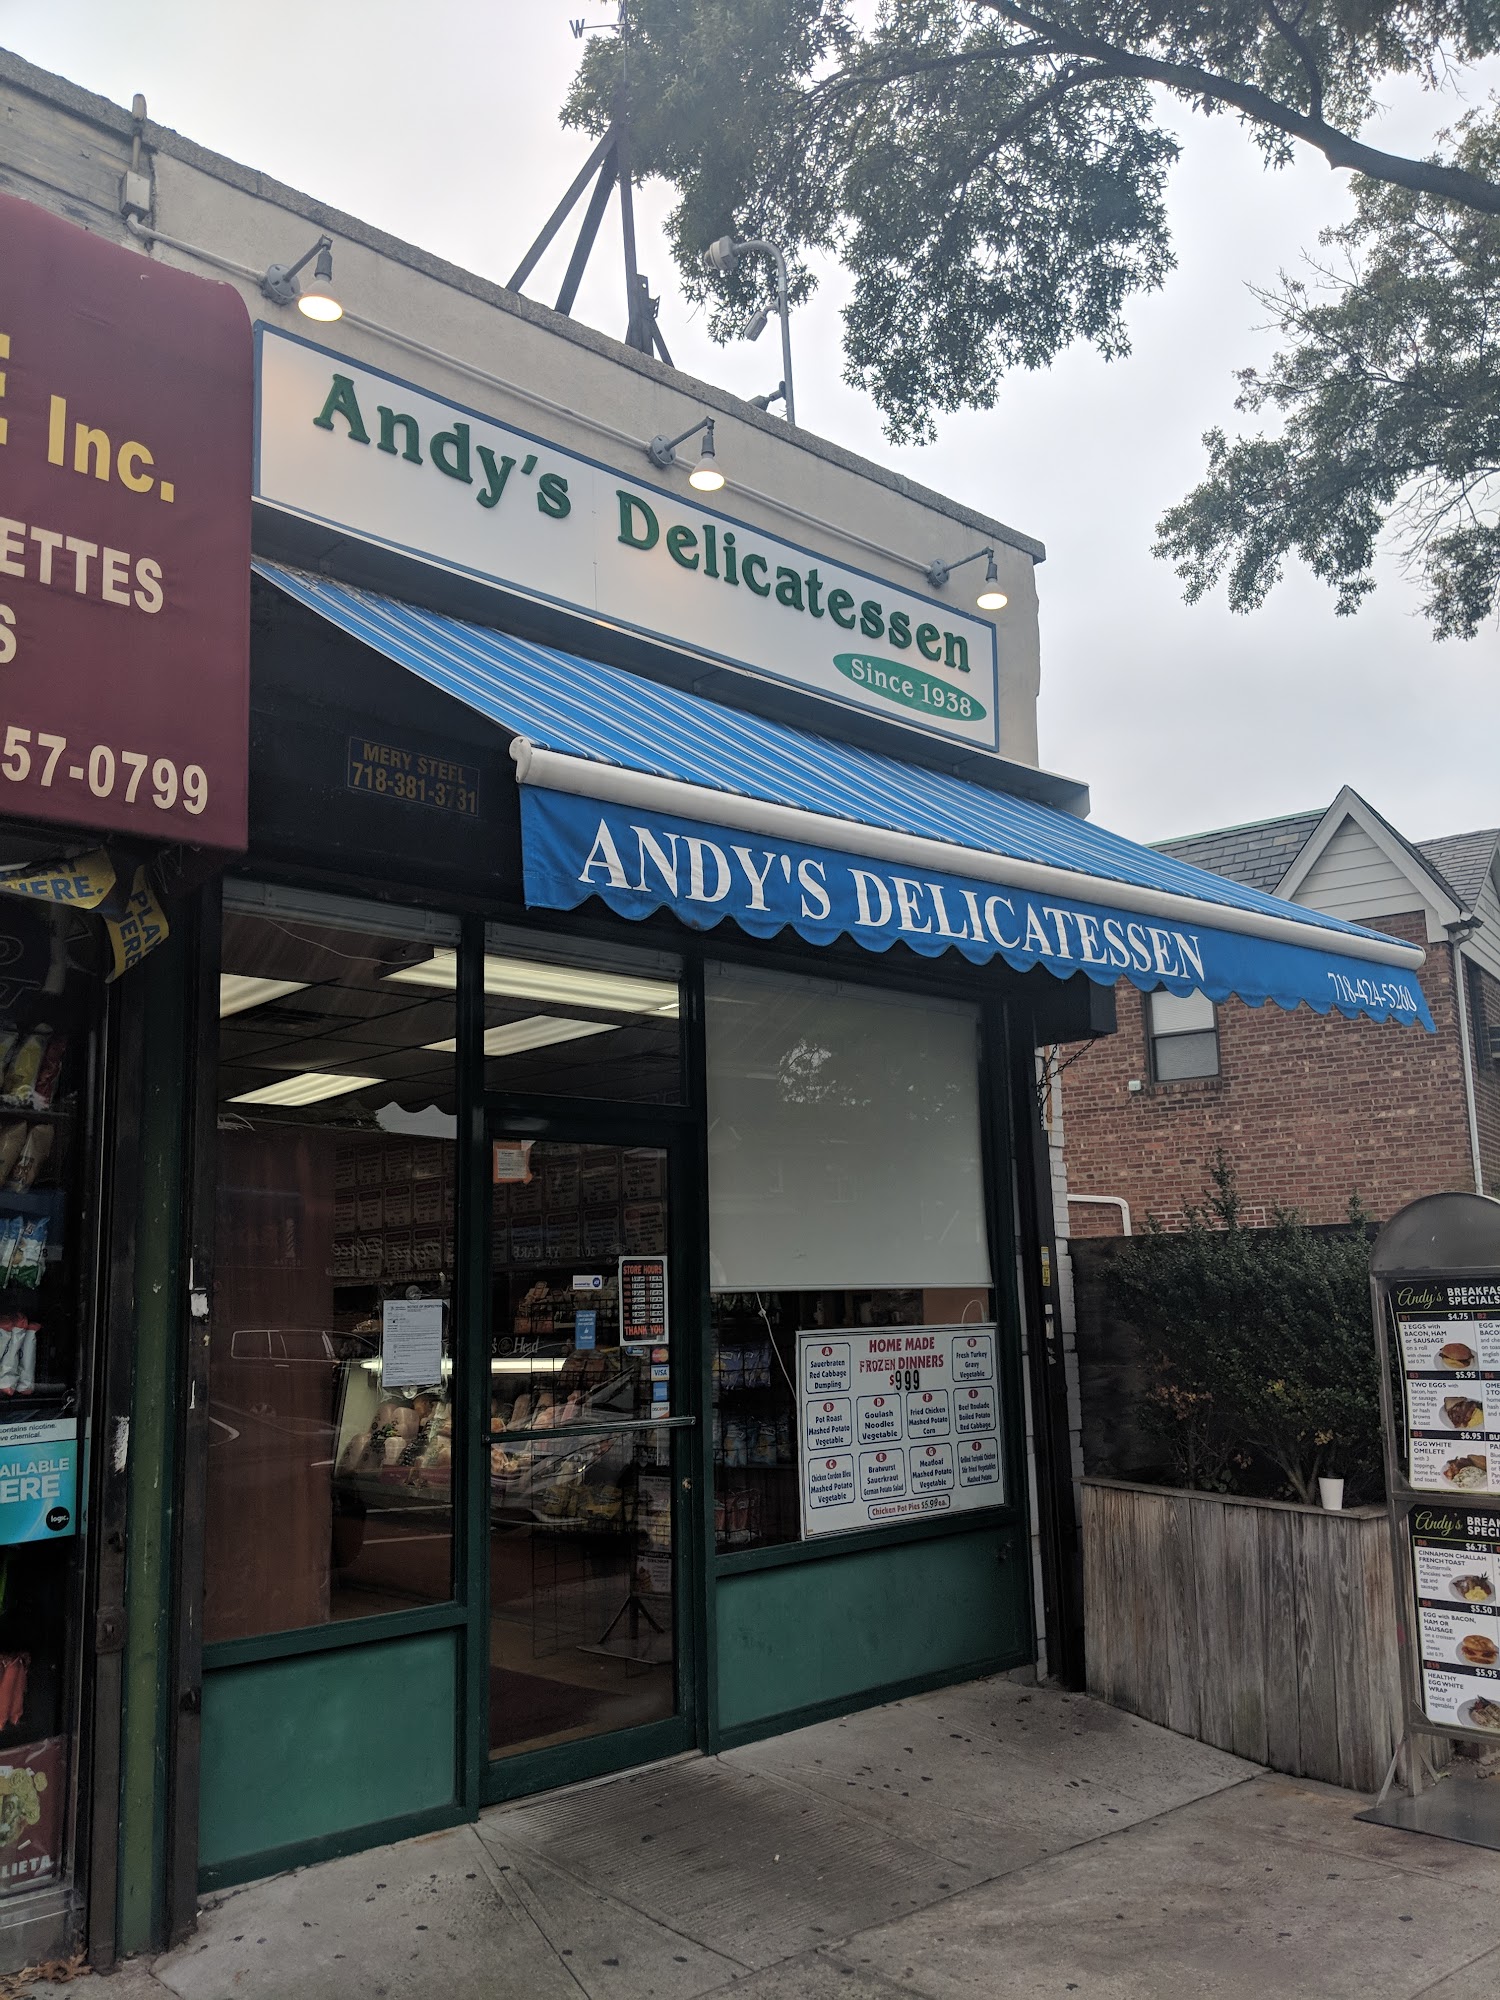 Andy's delicatessen